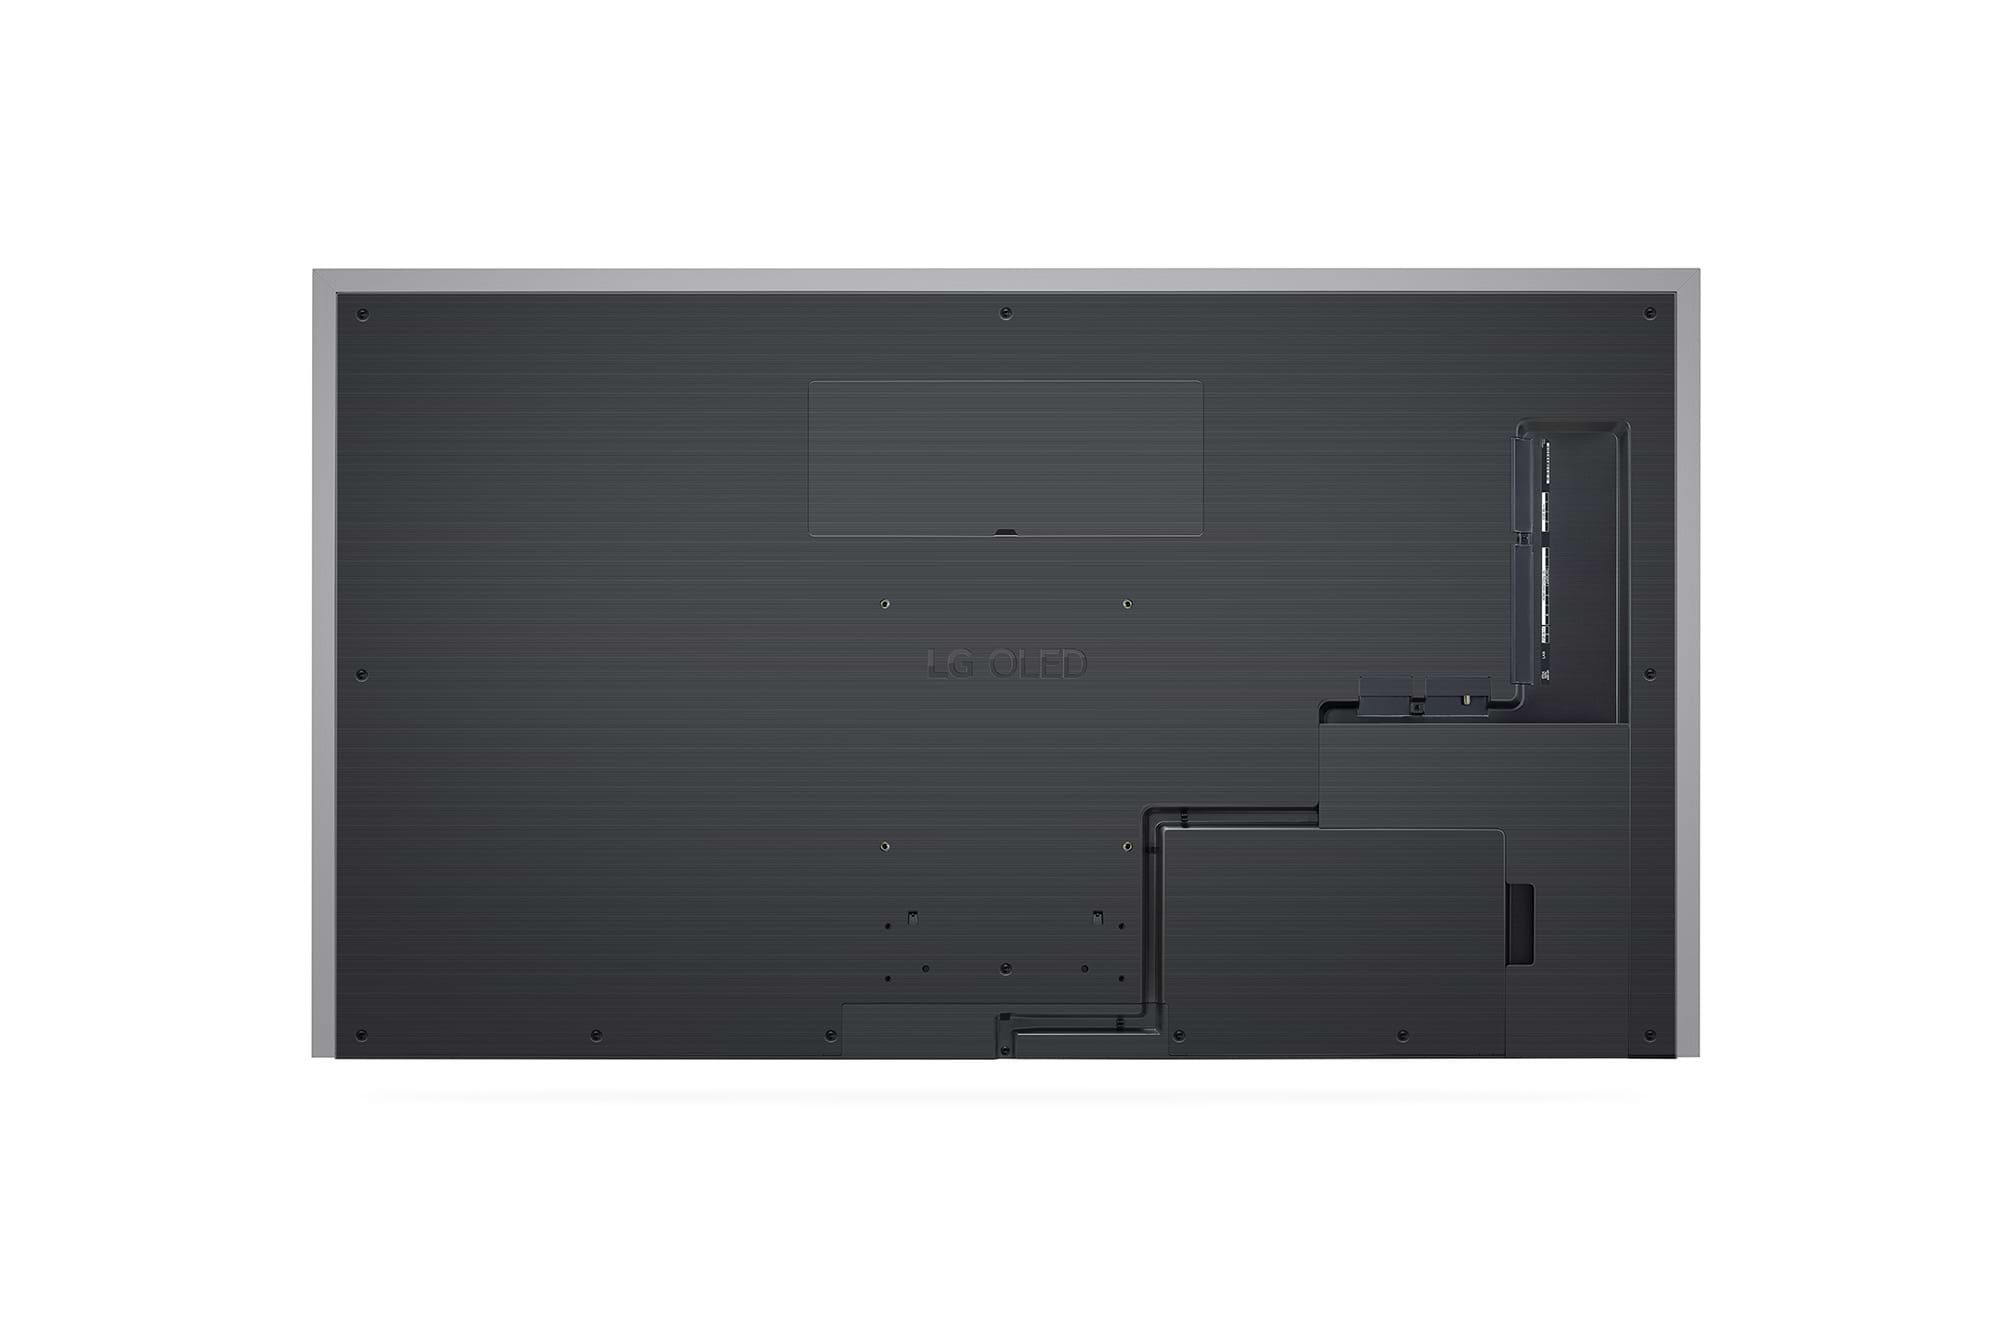 טלוויזיה חכמה בטכנולוגיית LG OLED evo Gallery Edition - בגודל 77 אינץ' חכמה ברזולוציית K4 דגם: OLED77G36LA